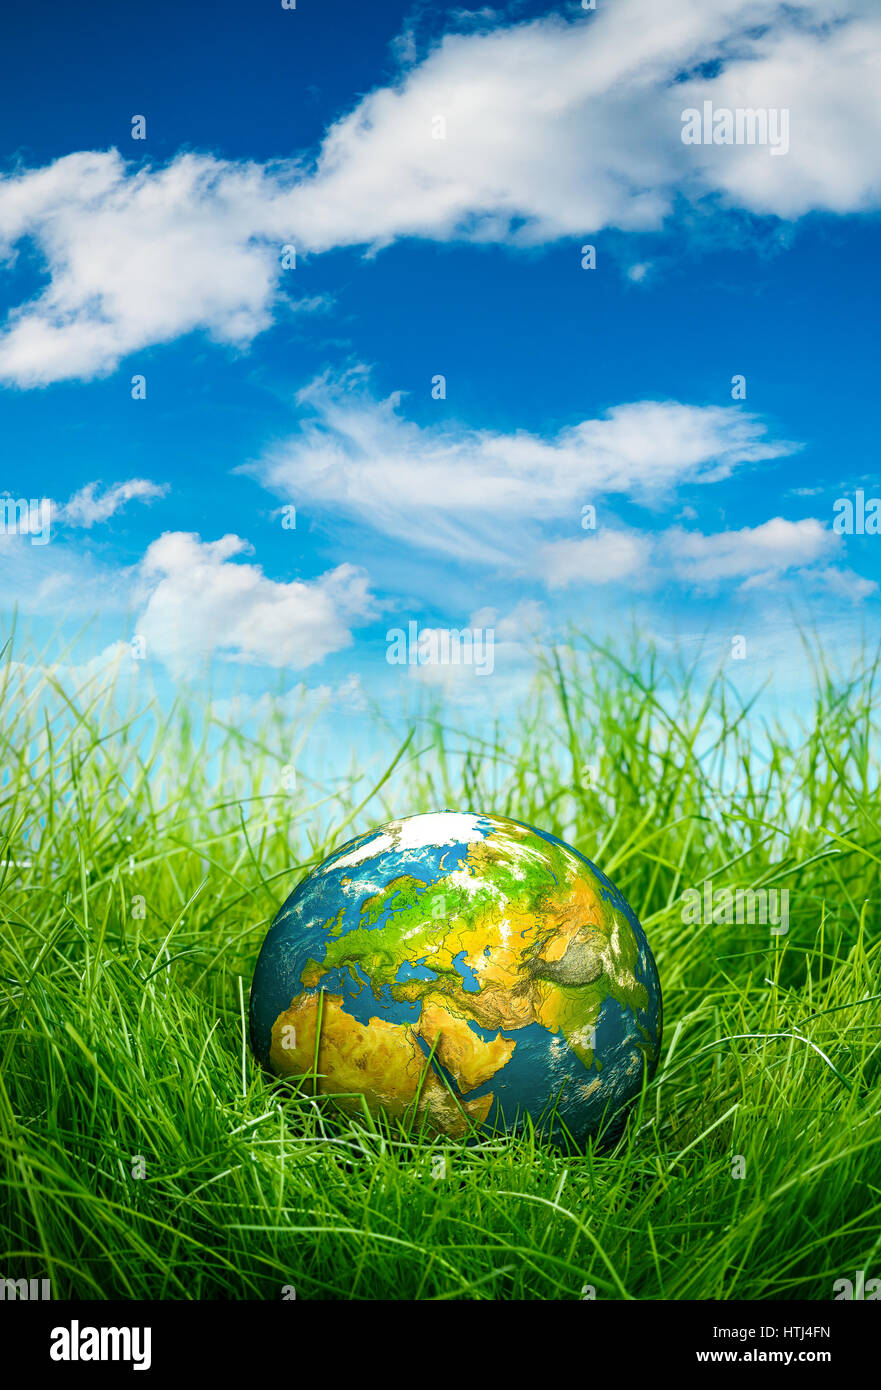 Globe se trouve sur l'herbe verte. Concept - Jour de la Terre. Banque D'Images